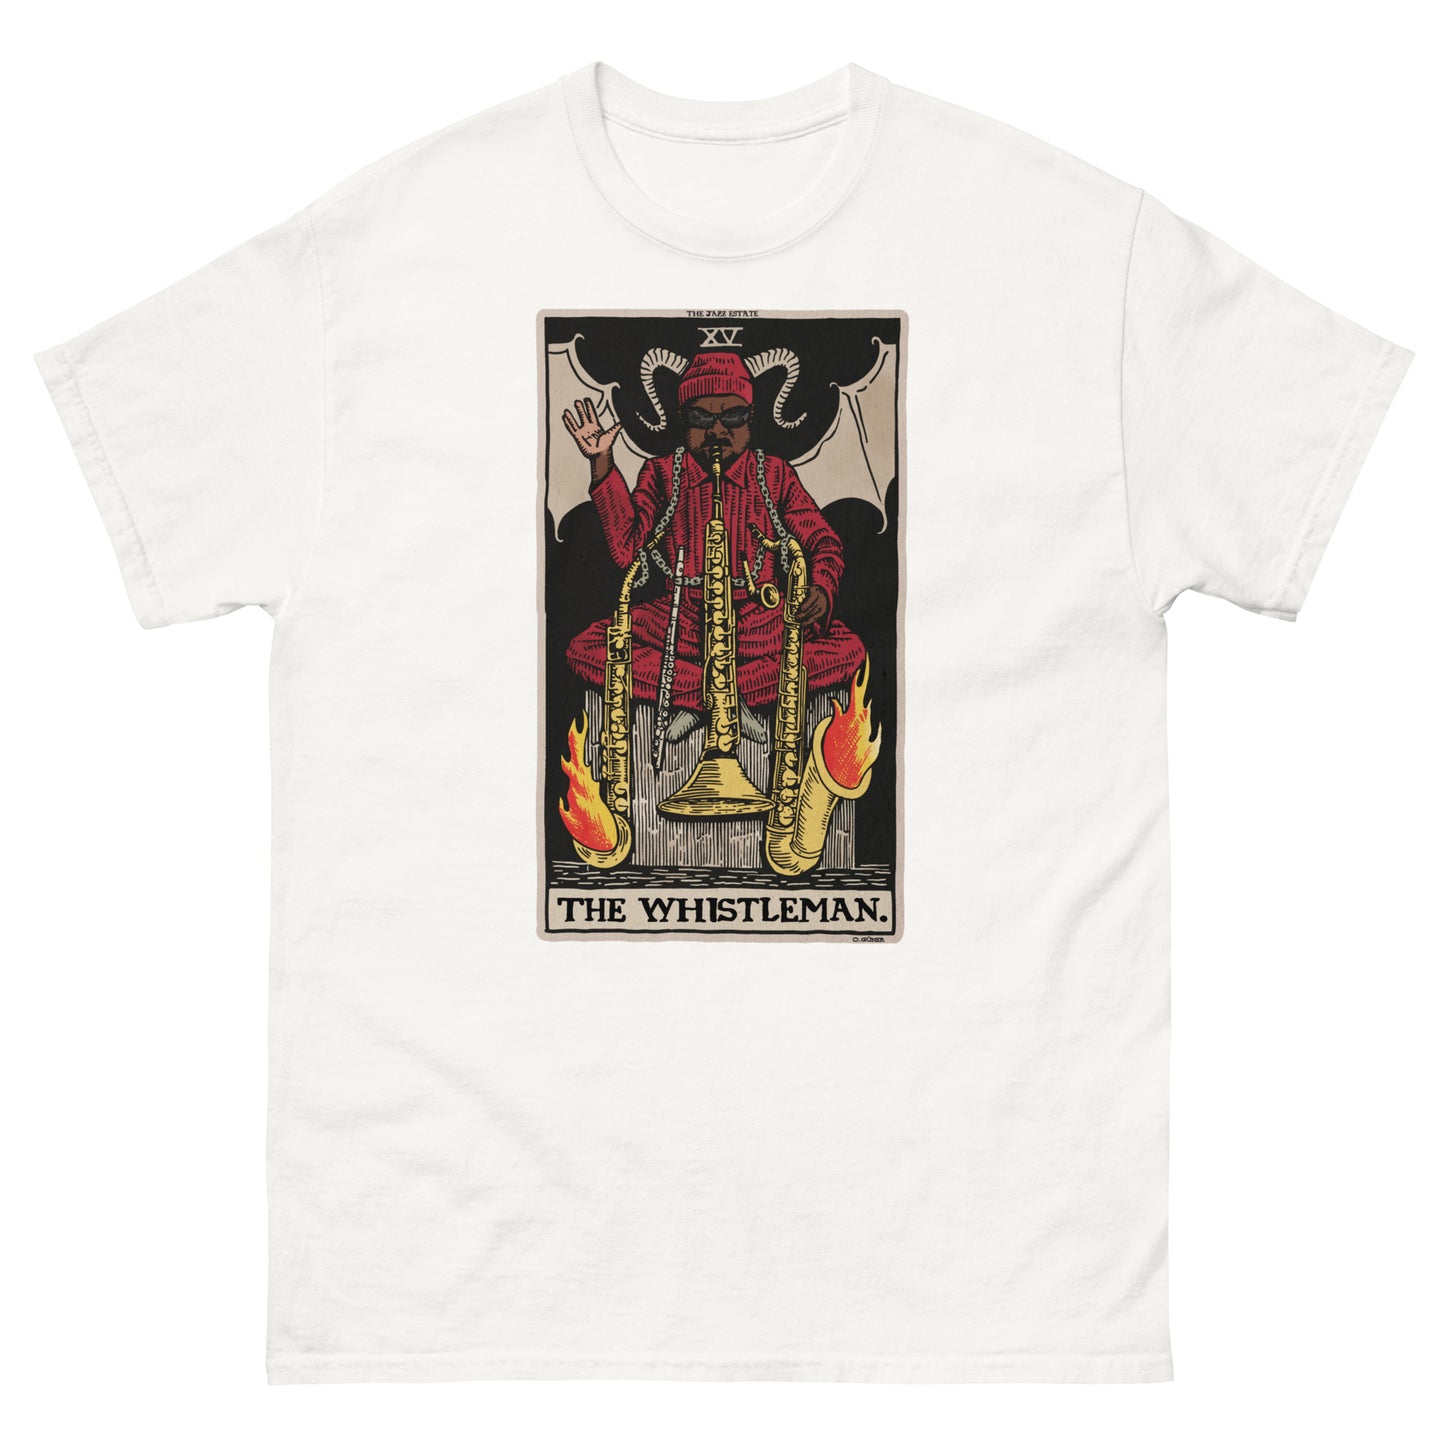 The Whistleman T-Shirt